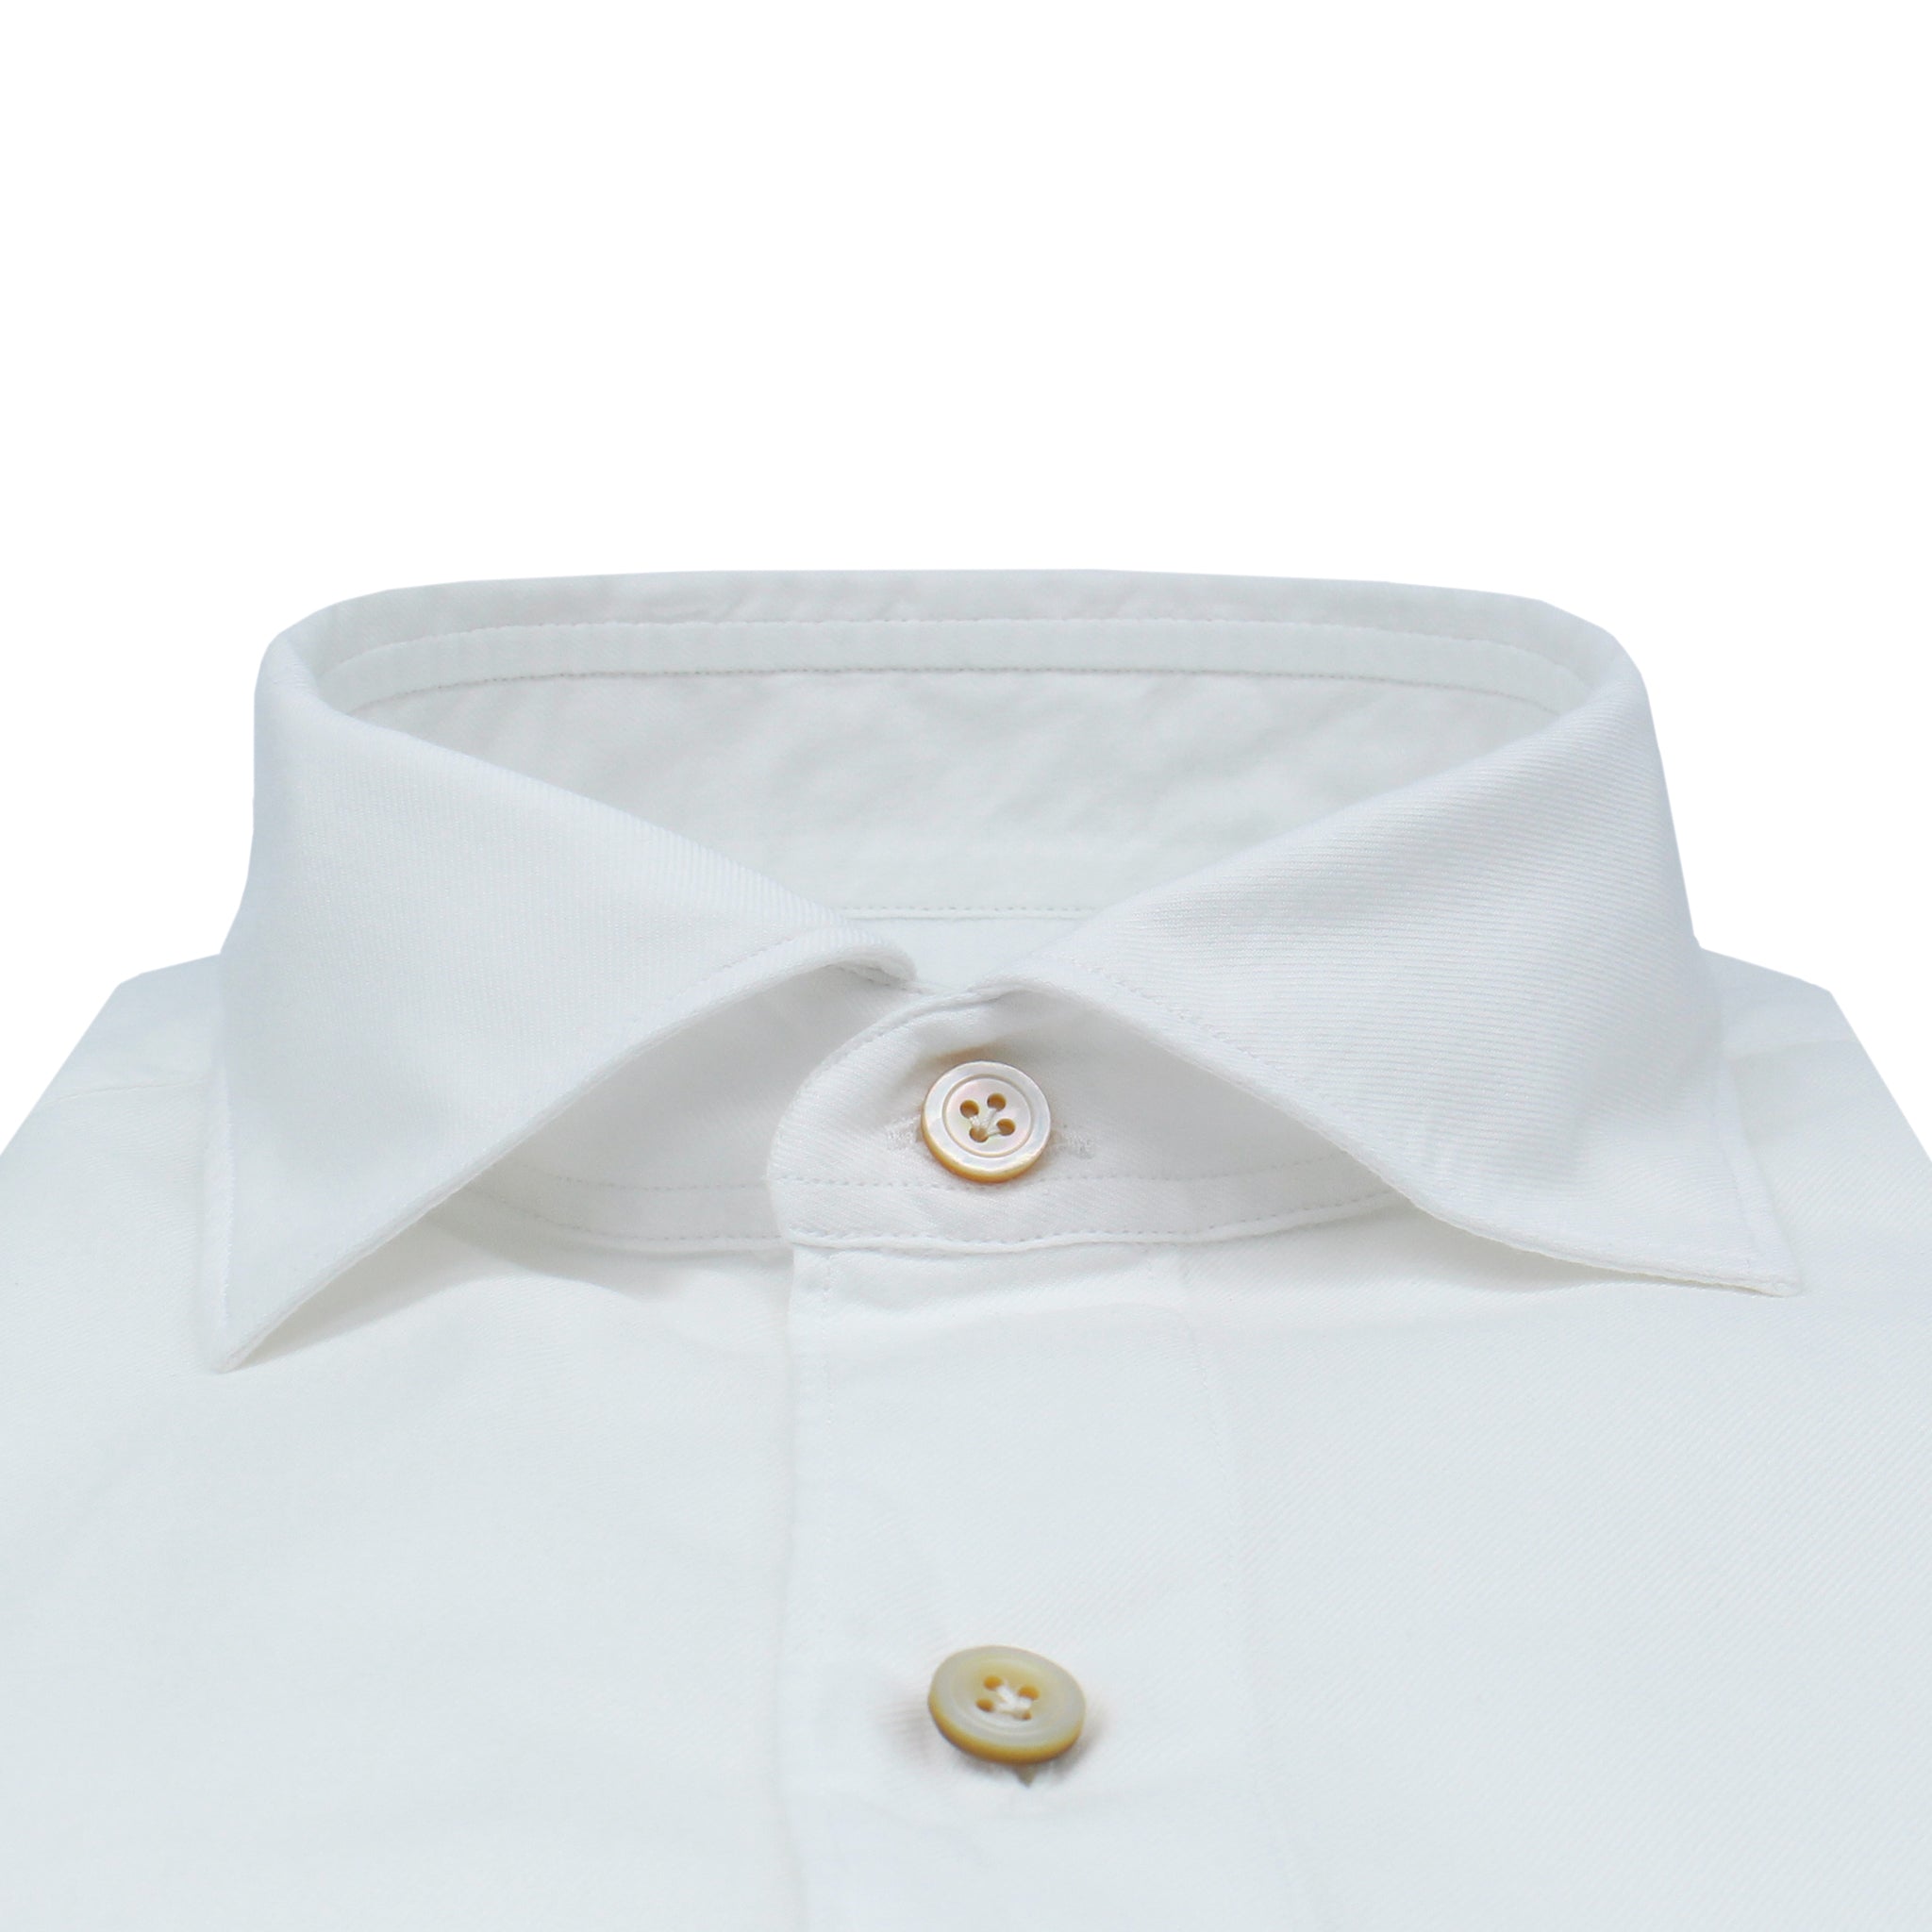 Tokyo sport shirt in white twill cotton